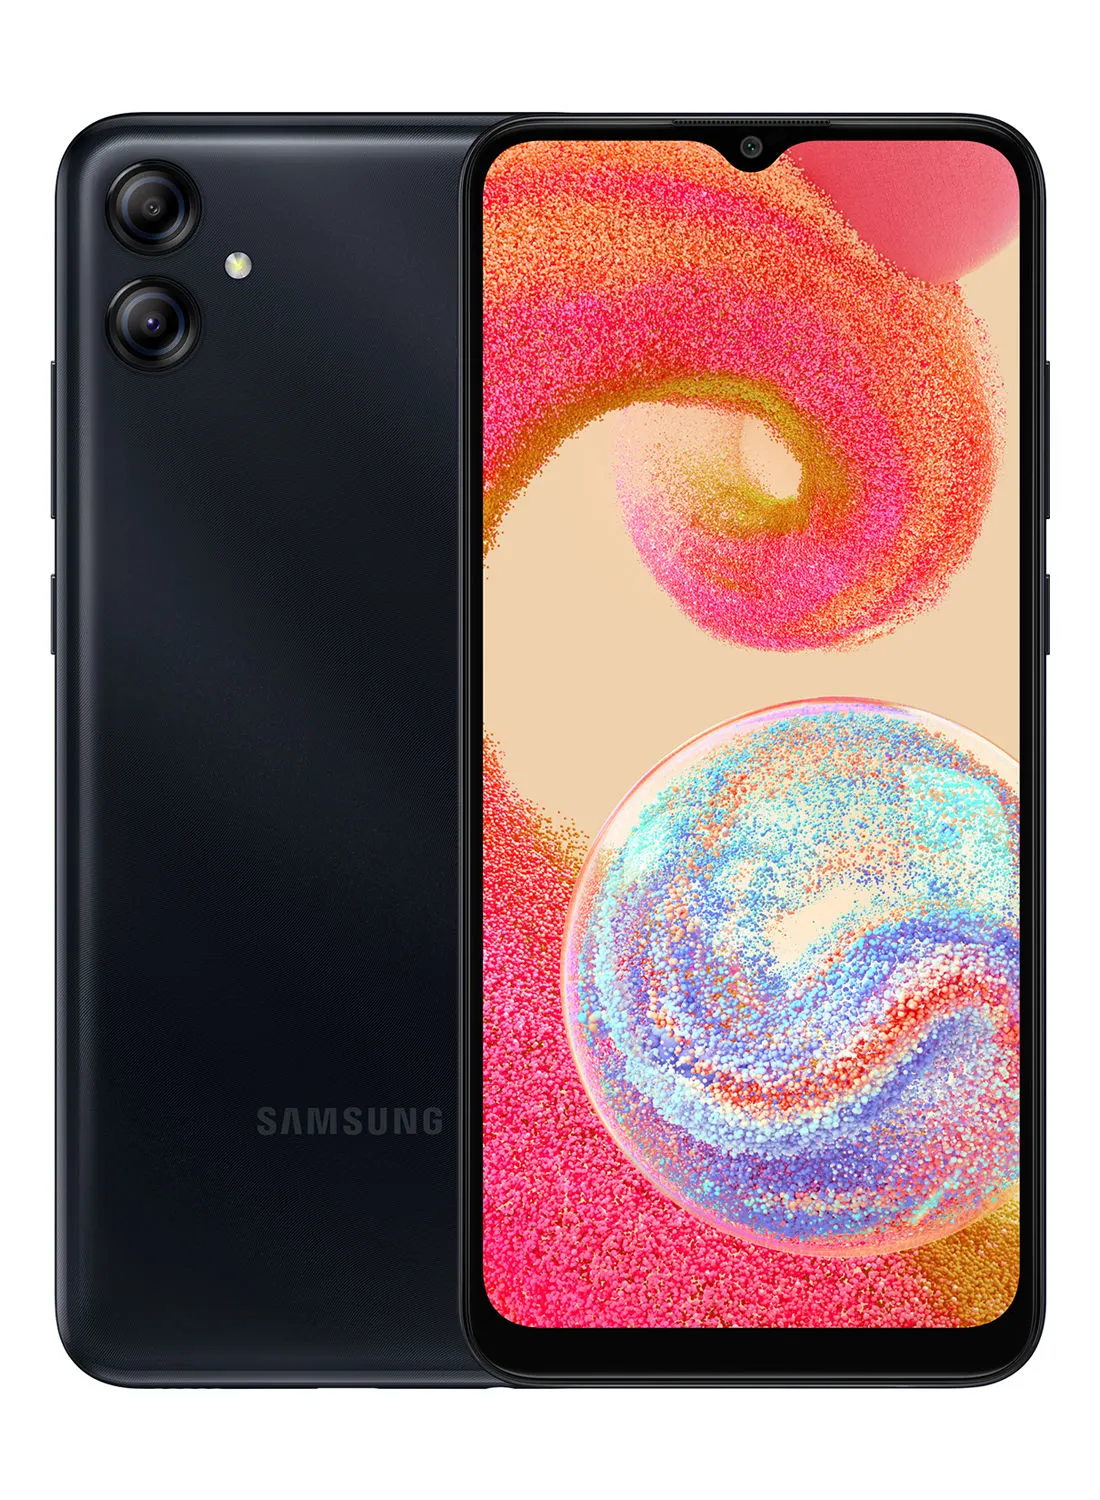 Samsung Galaxy A04e Dual SIM Black 3GB RAM 32GB 4G LTE - Middle East Version